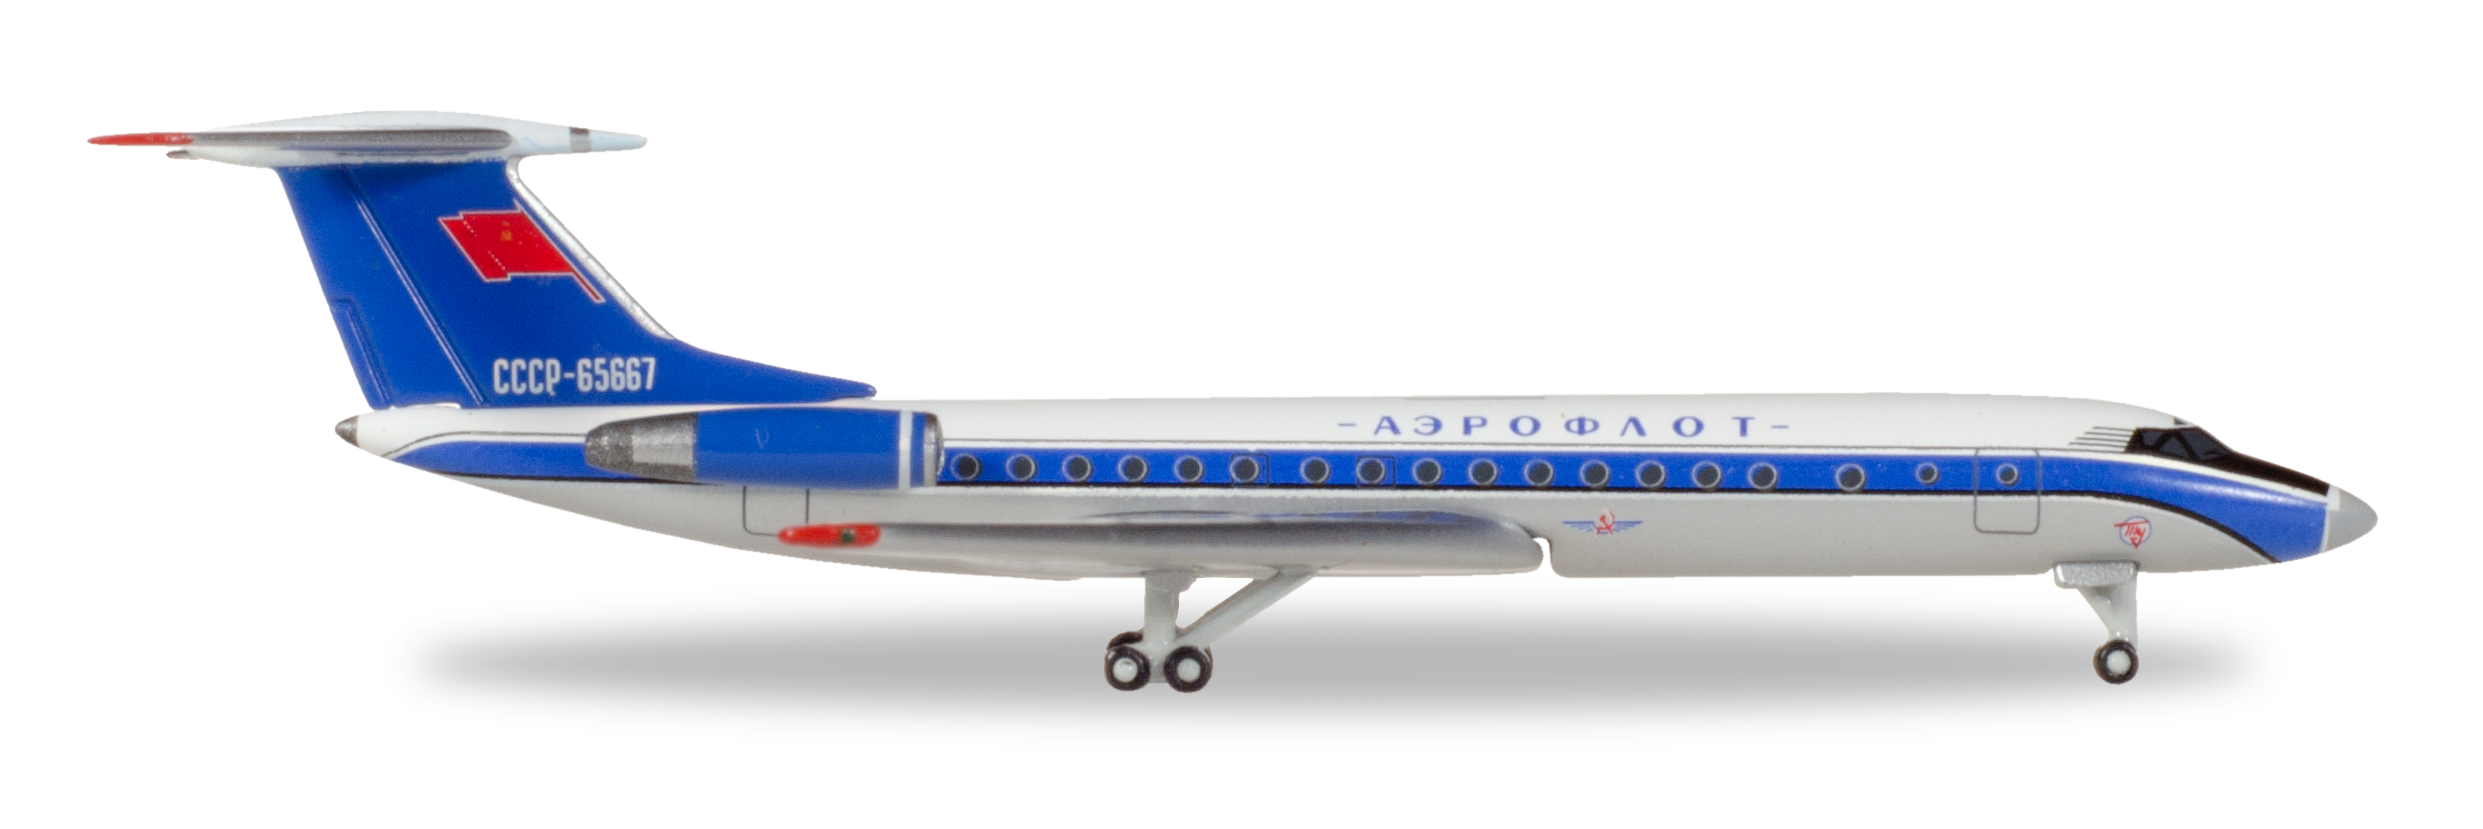 TU-134A Aeroflot Bluebird - 529938